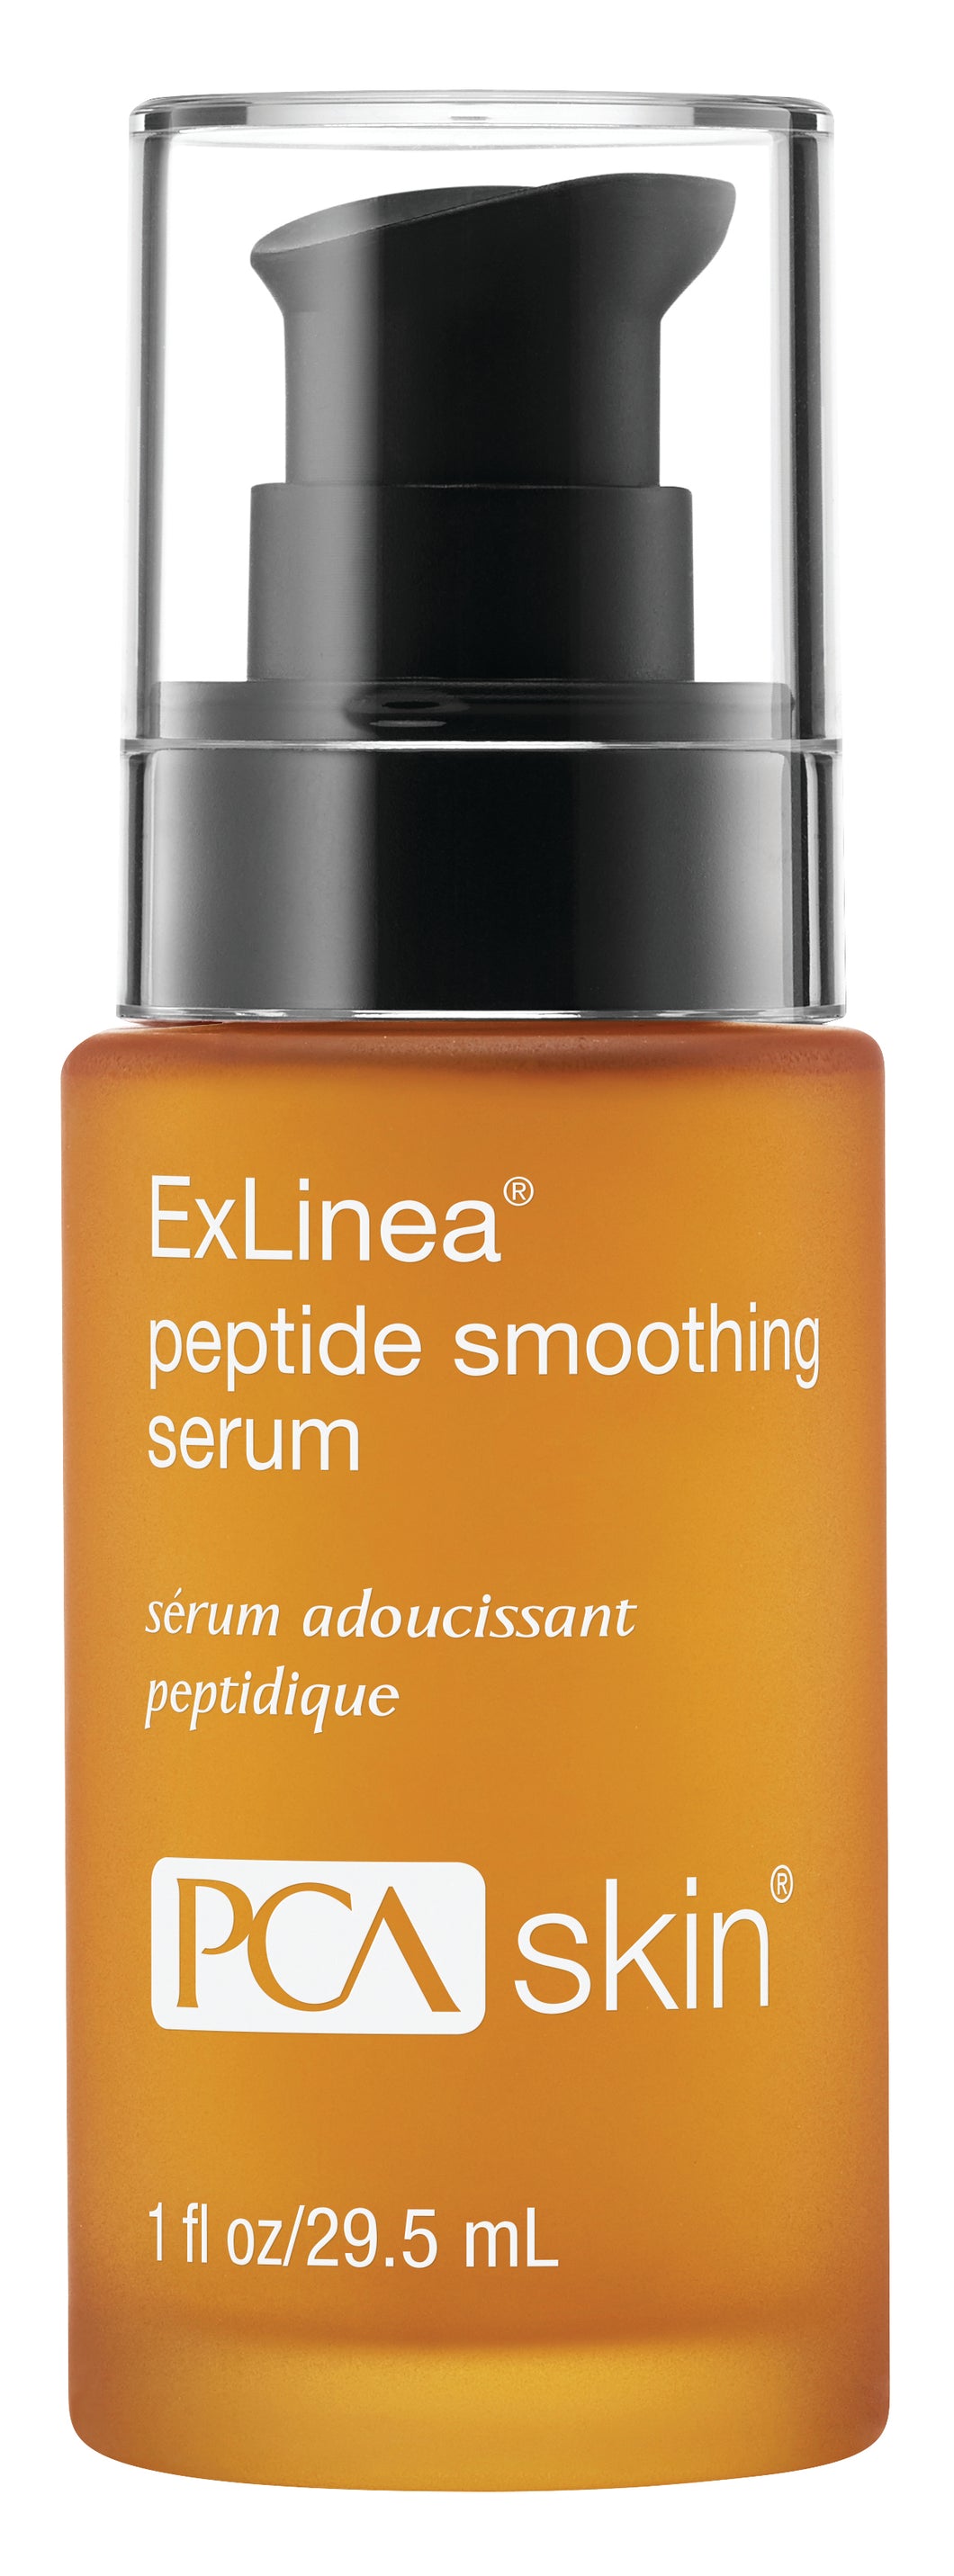 ExLinea® Peptide Smoothing Serum